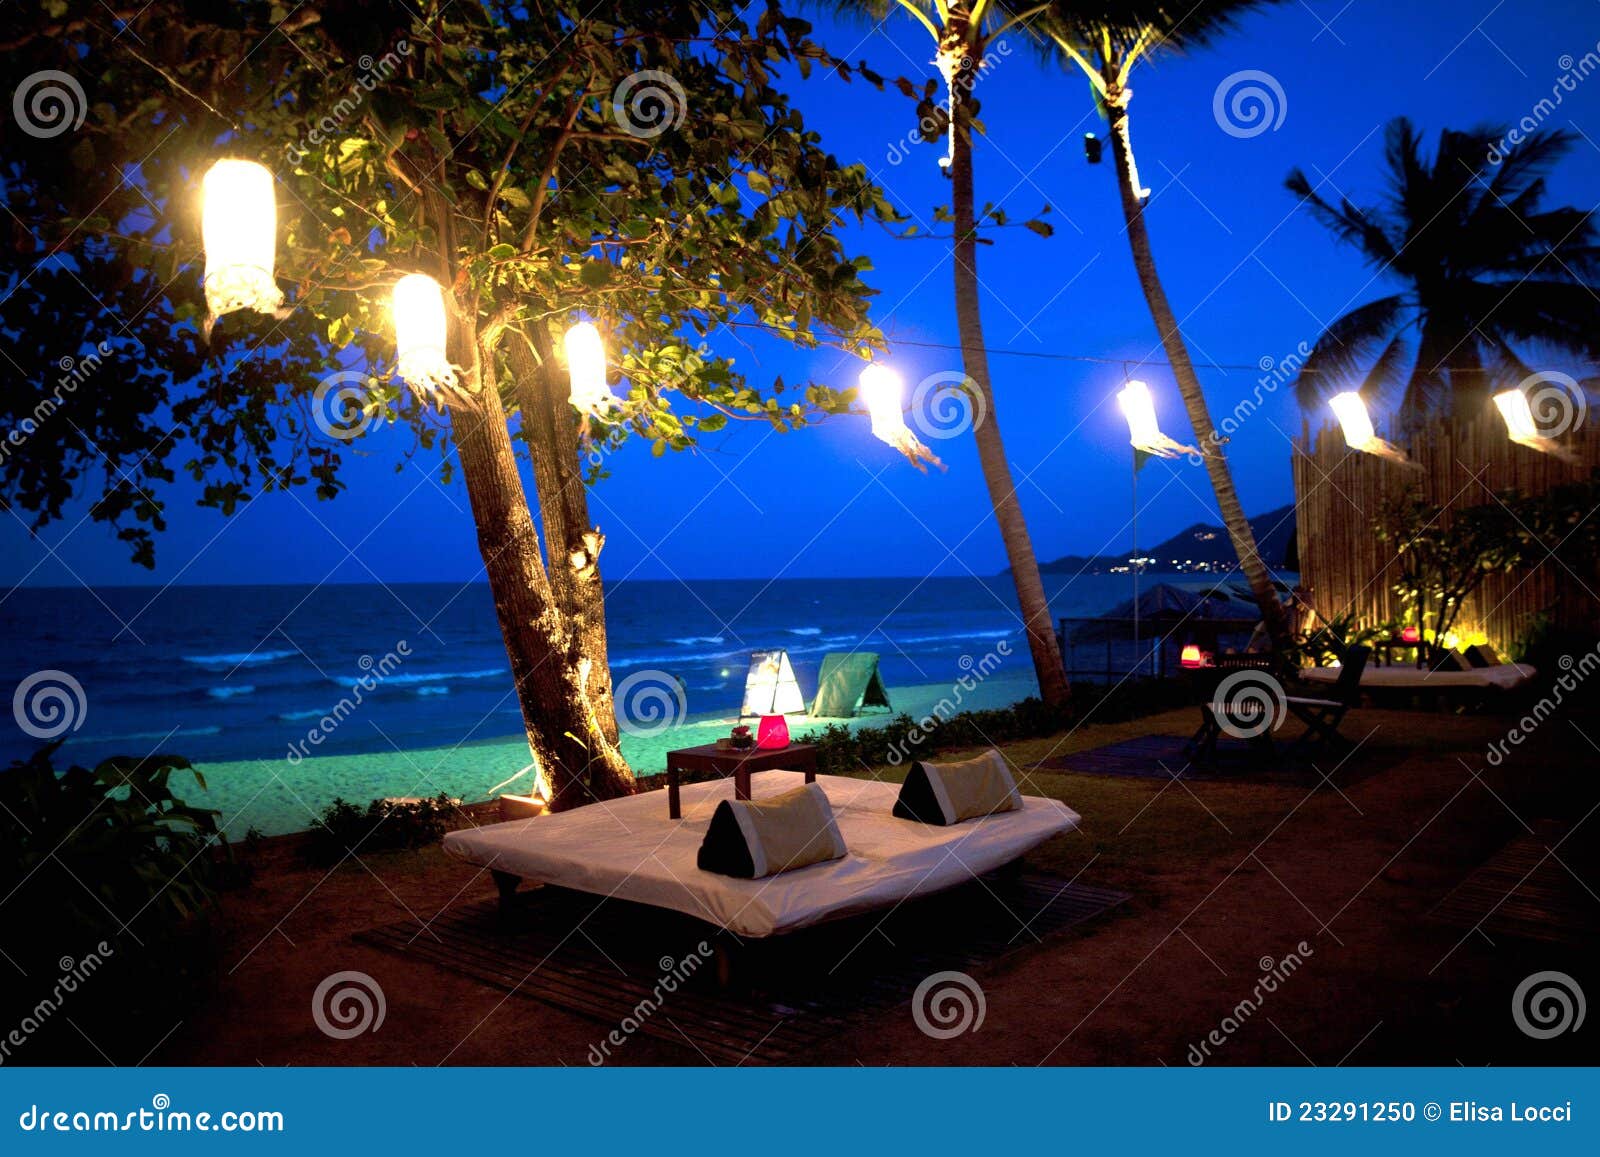 Hotelerholungsort auf dem Strand in Thailand. Restaurant mit Bett auf dem Strand im KOH Samui am Abend, Thailand